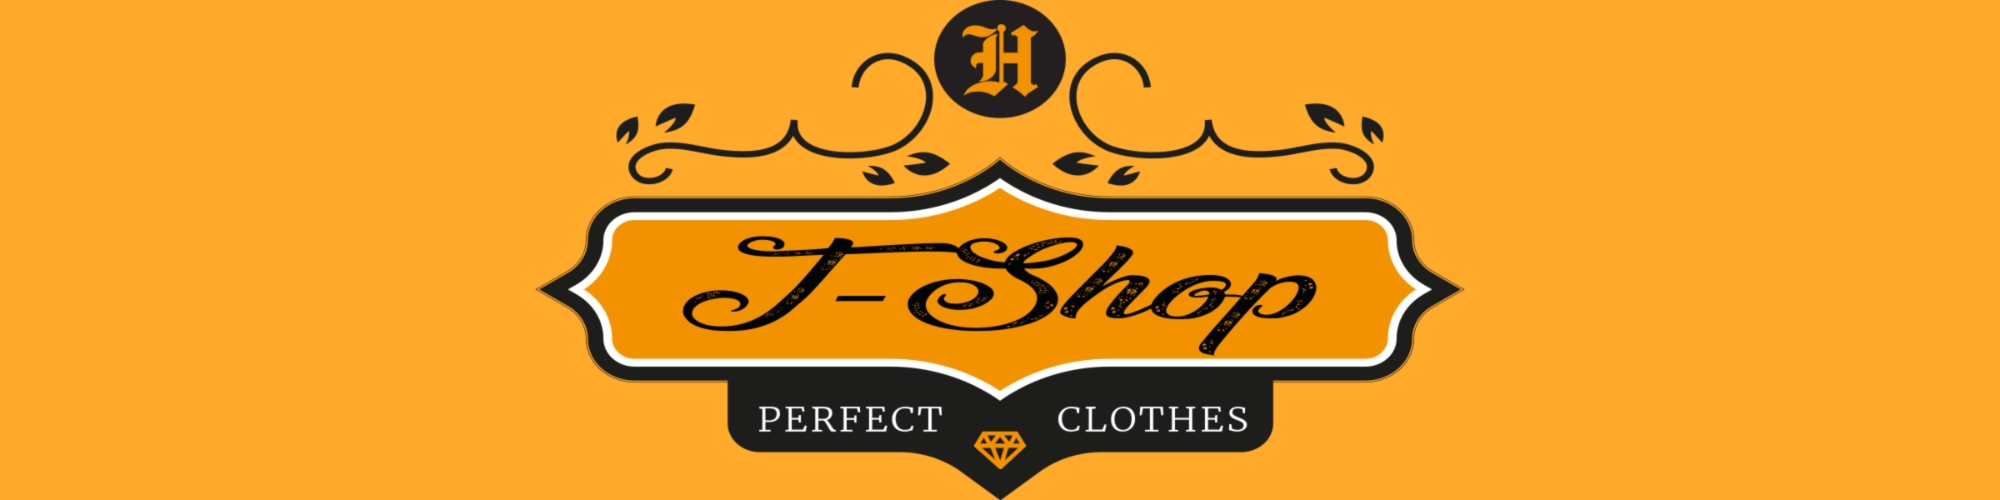 Showroom - T-Shop-1